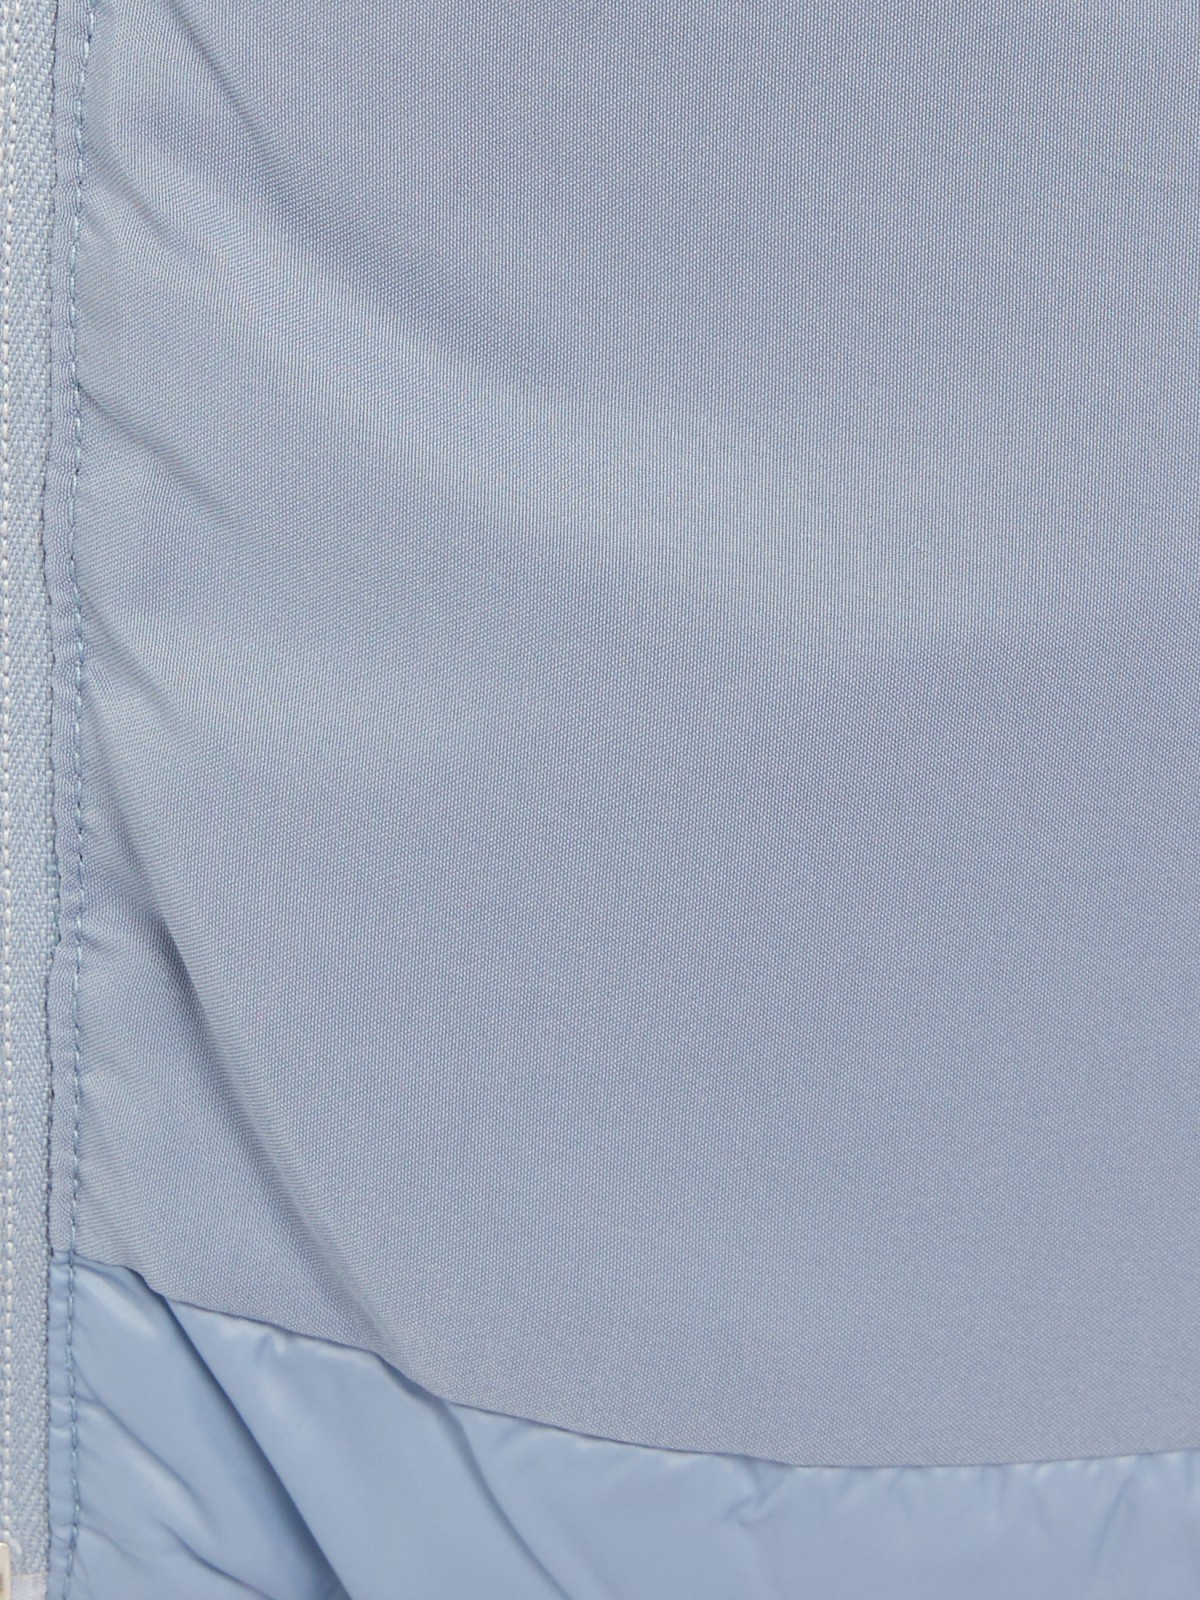 Утеплённая стёганая куртка укороченного фасона с капюшоном zolla 023335112224, цвет голубой, размер S - фото 5